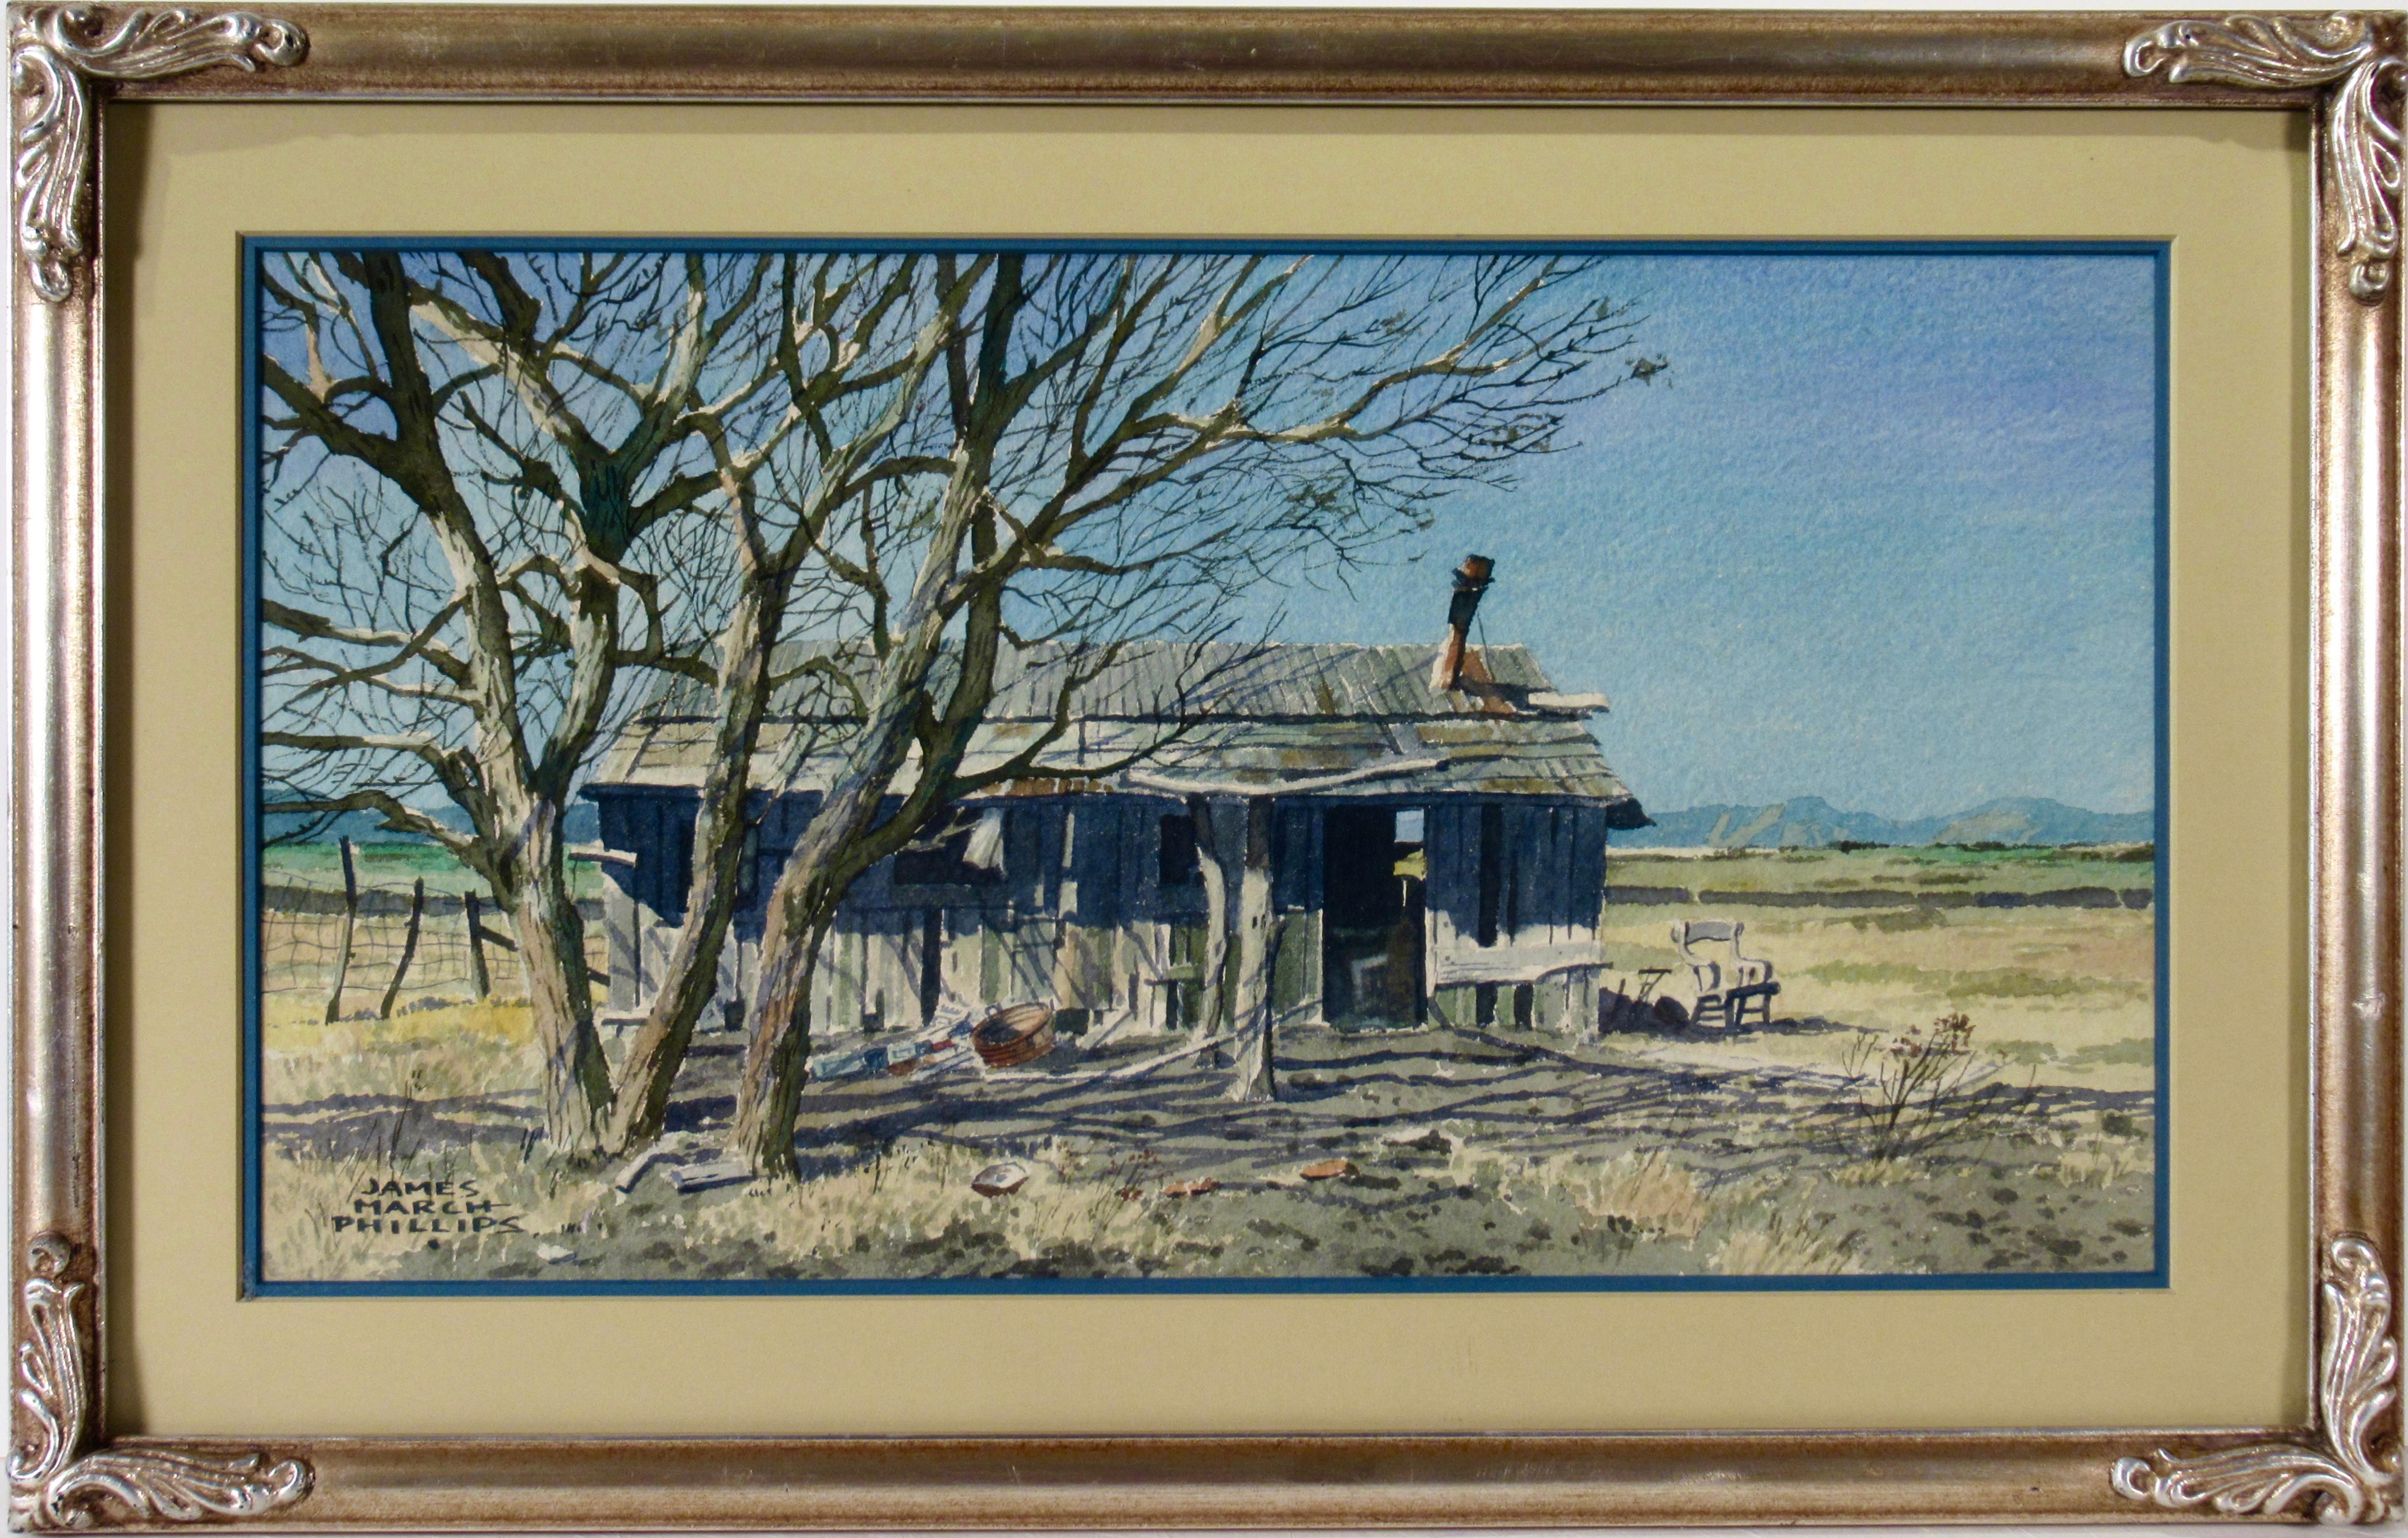 Landscape Art James March Phillips - Maison de ranch oubliée, Arizona